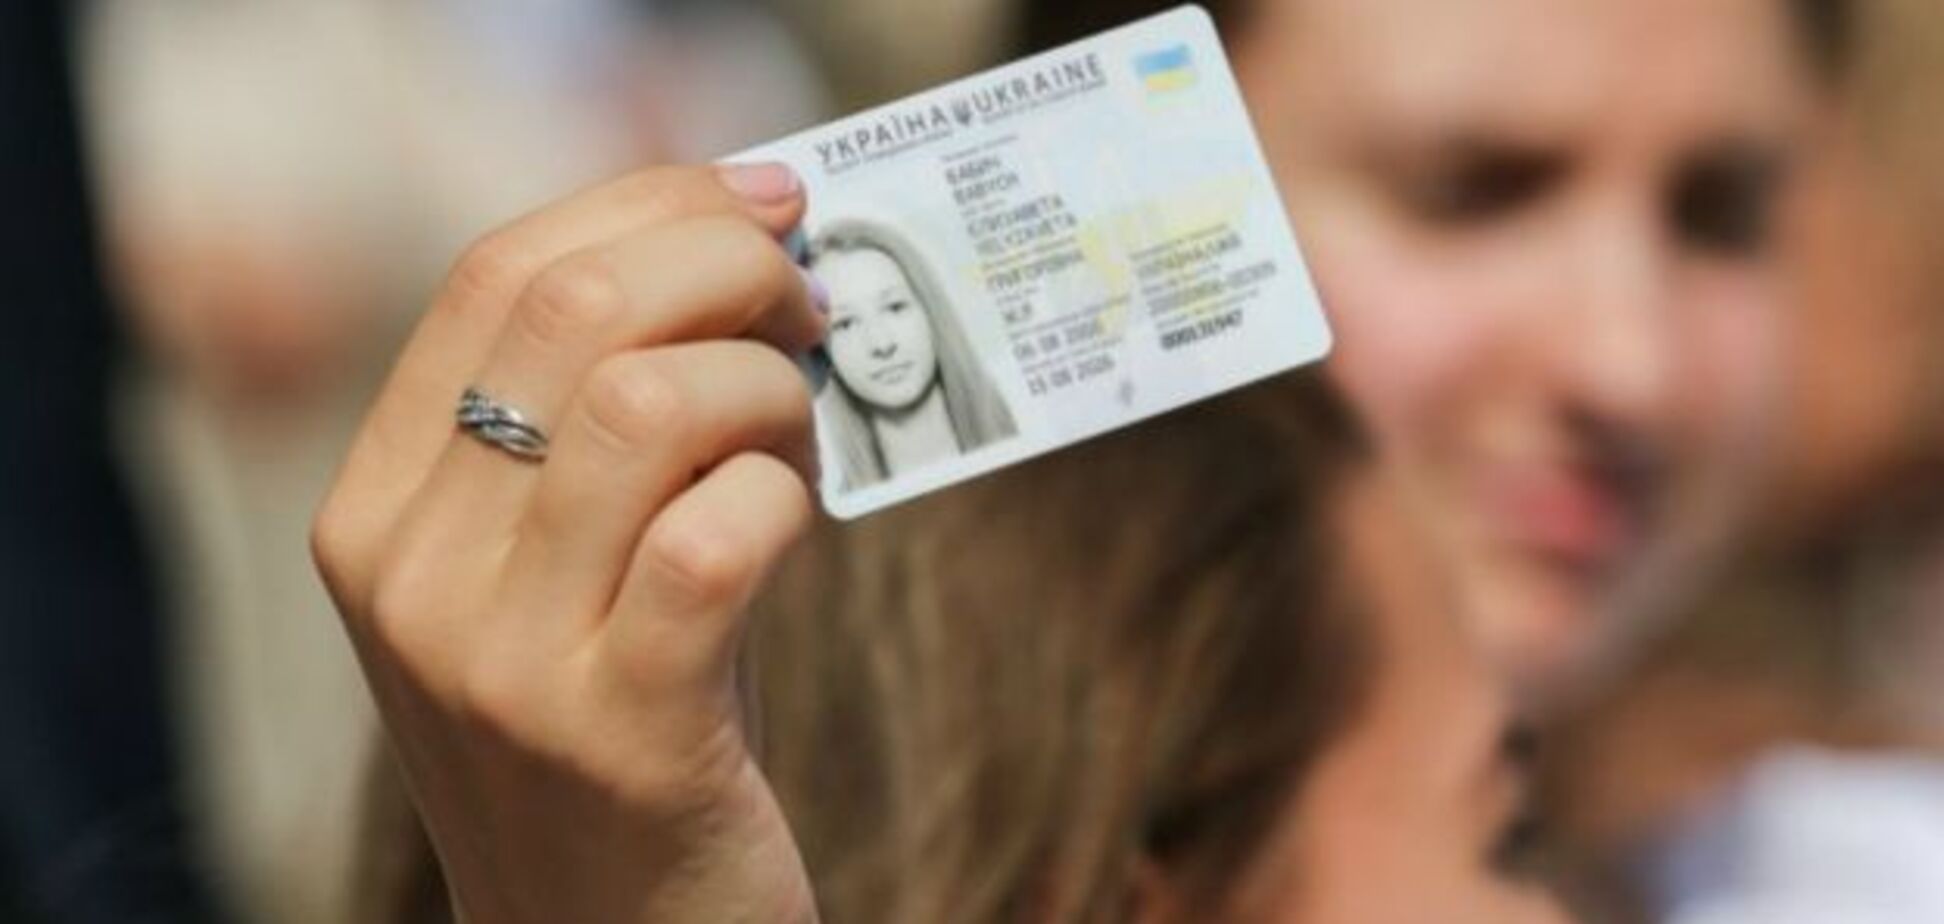 Закордонний паспорт не потрібен: українцям спростили поїздки у ще одну країну